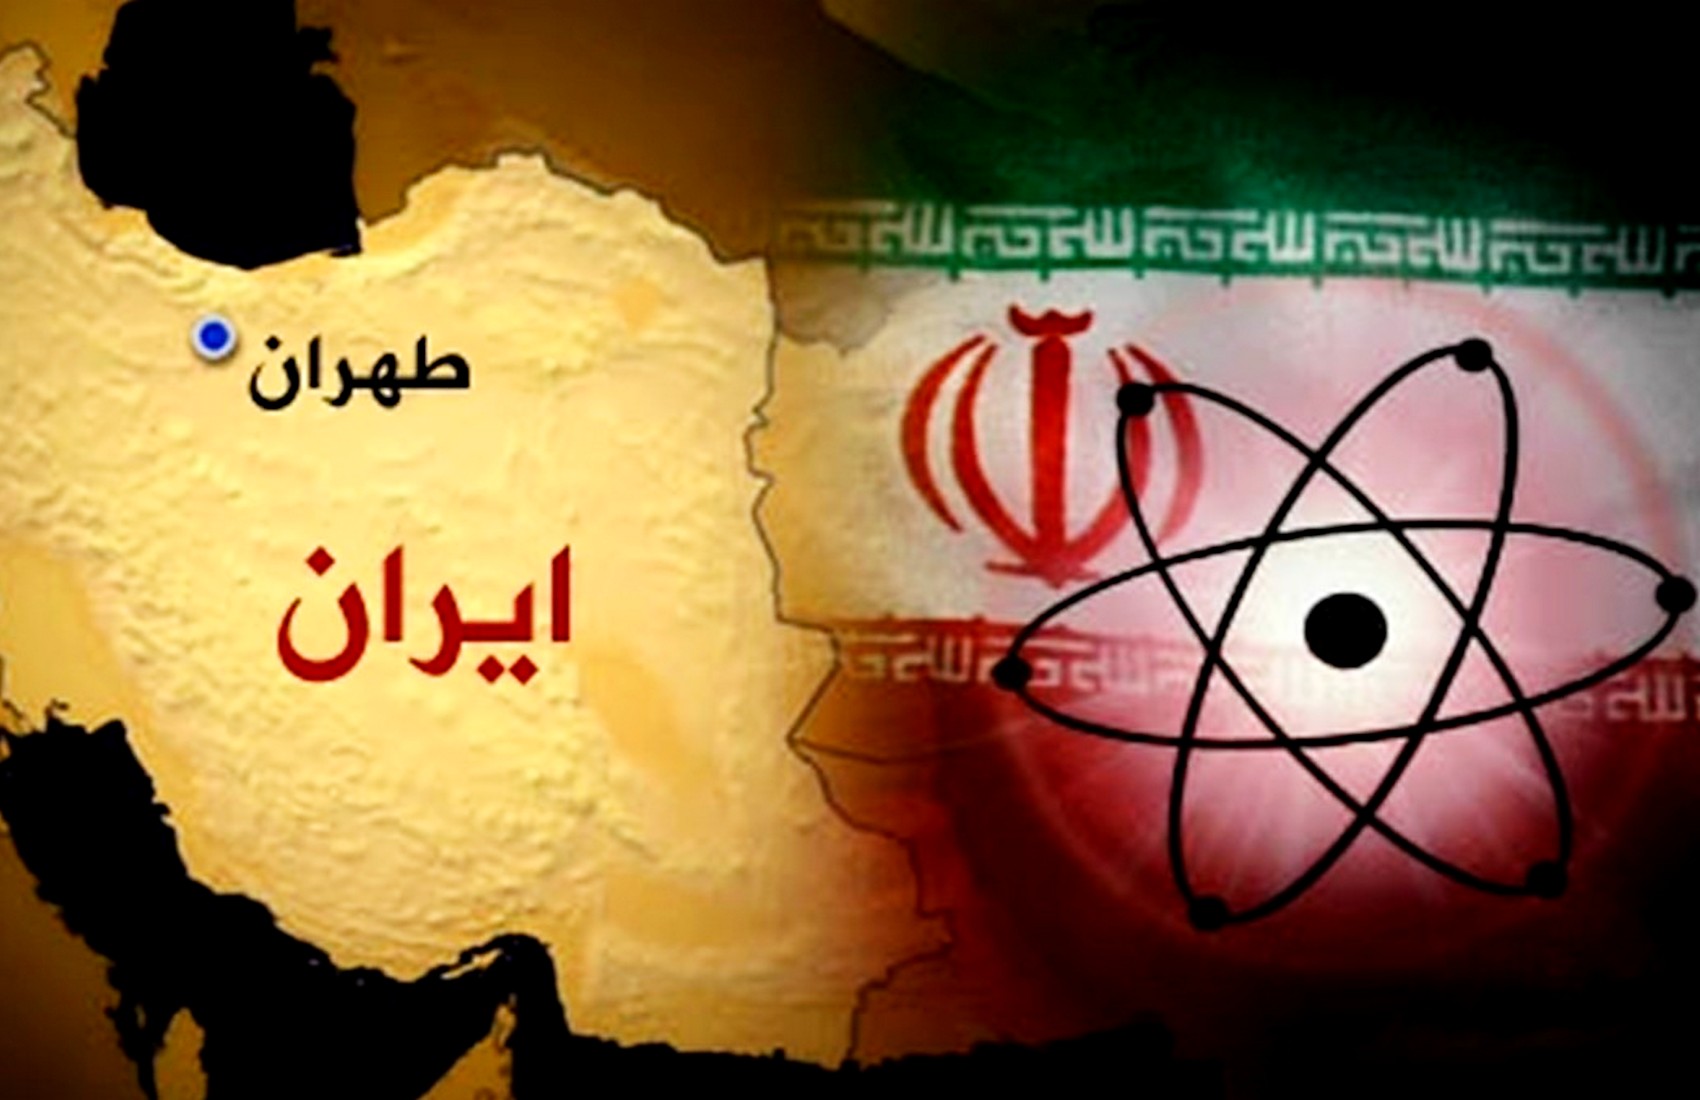 За останні 13 років в Ірані вбили п’ять фізиків-ядерників